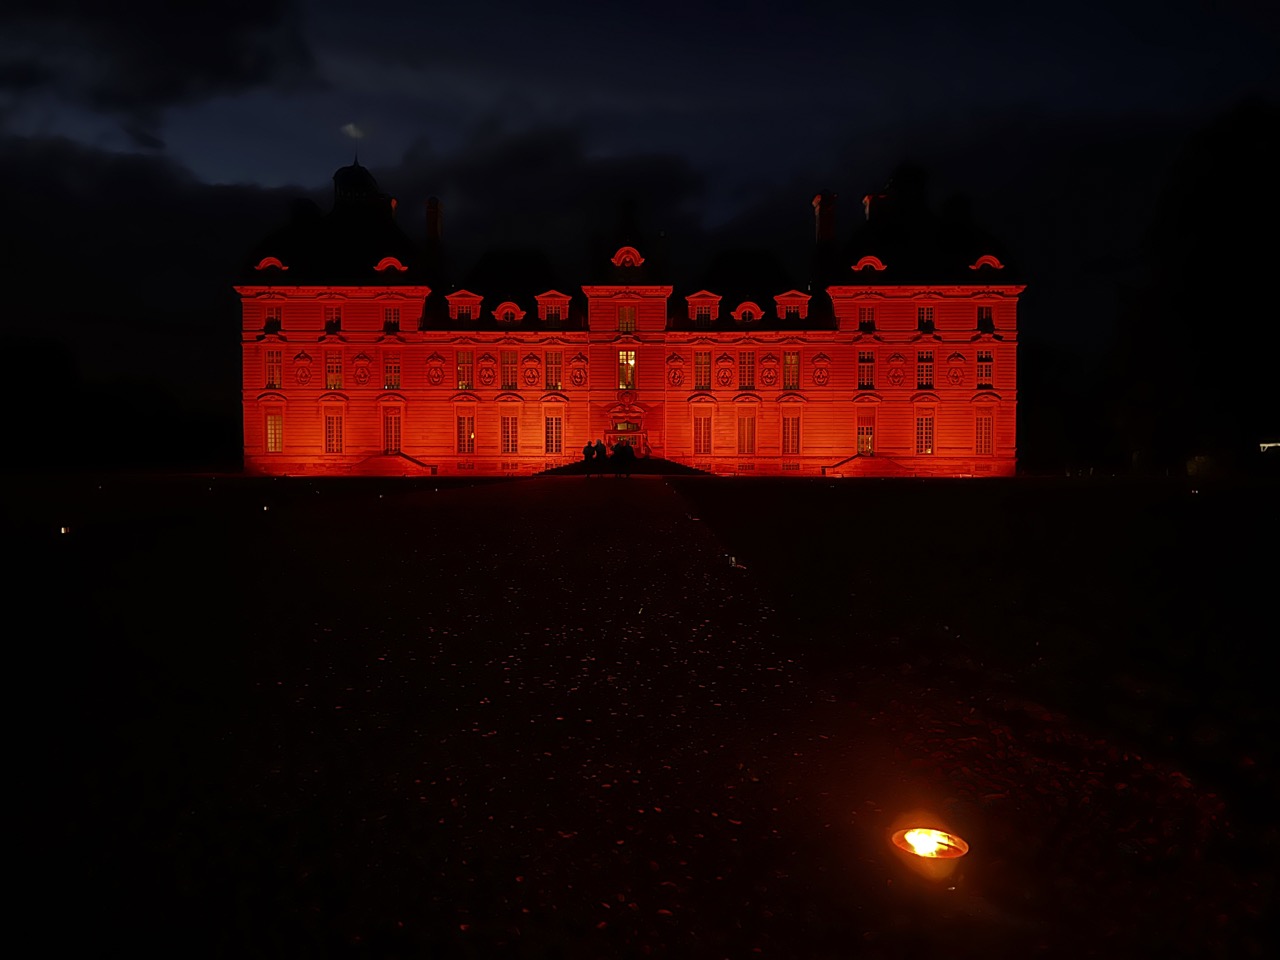 La façade du château de Cheverny éclairée en rouge